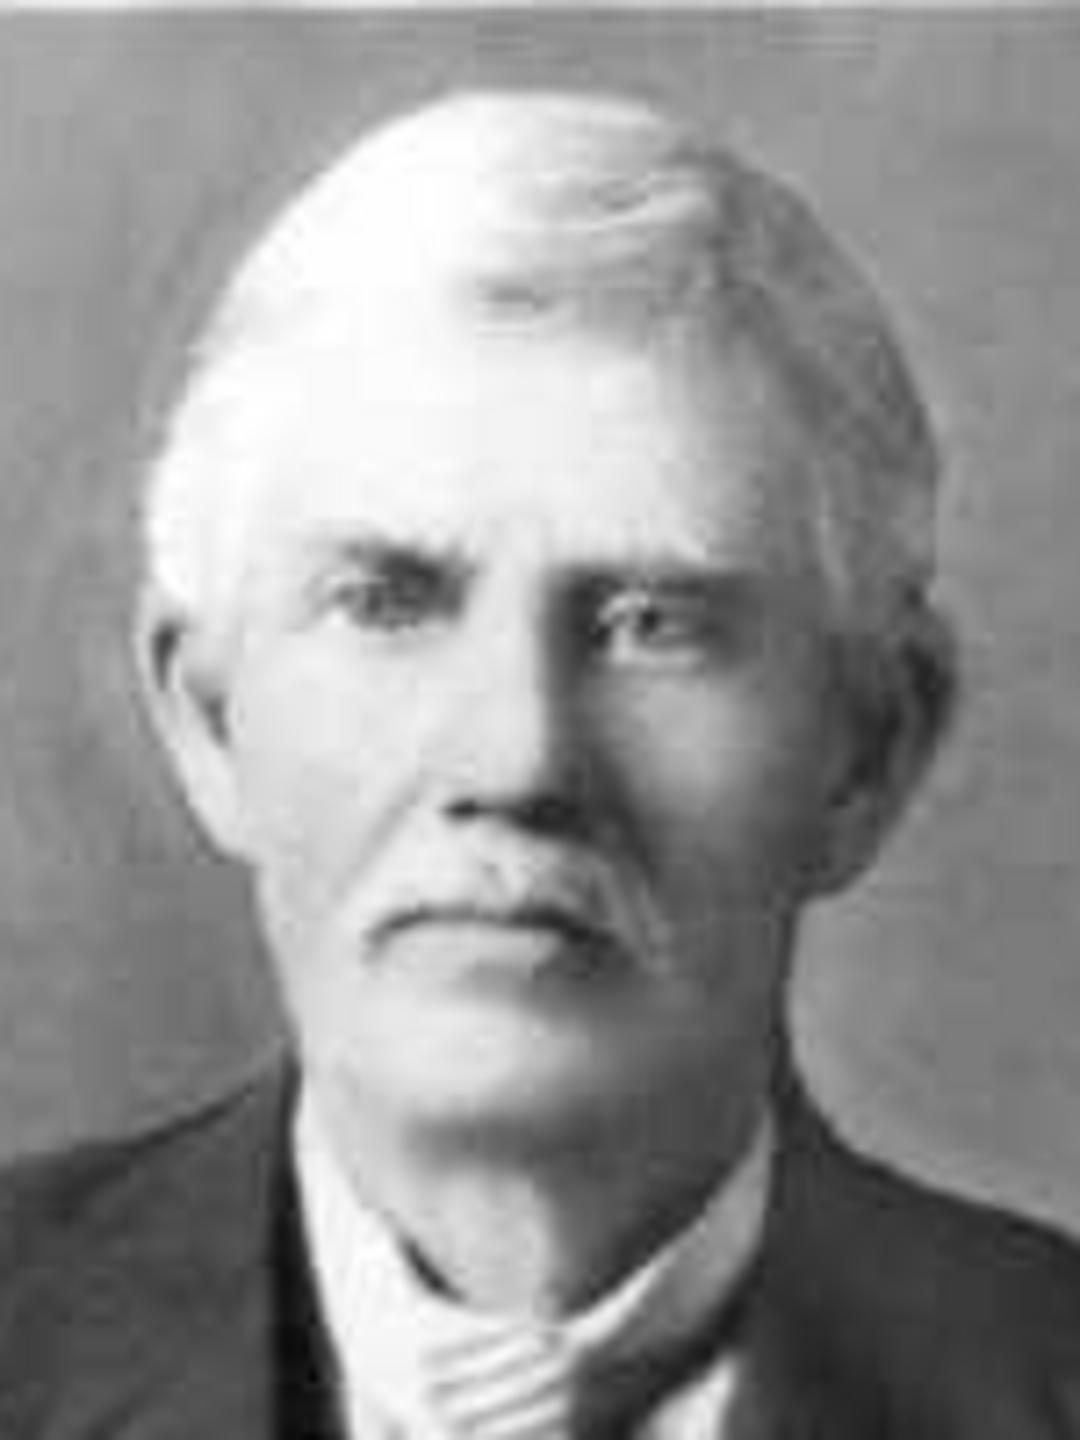 Mahonri Moriancumer Collings (1856 - 1947) Profile